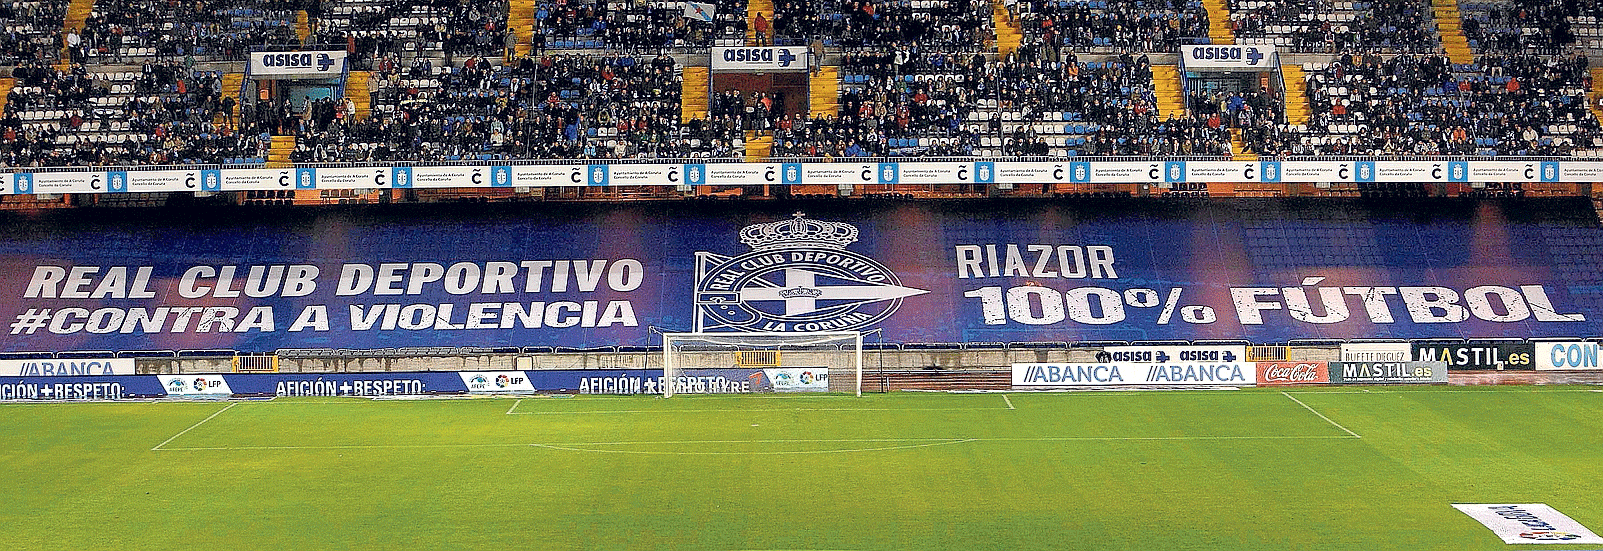 La grada de los Riazor Blues, cubierta por una pancarta contra la violencia, ayer en el estadio de Riazor